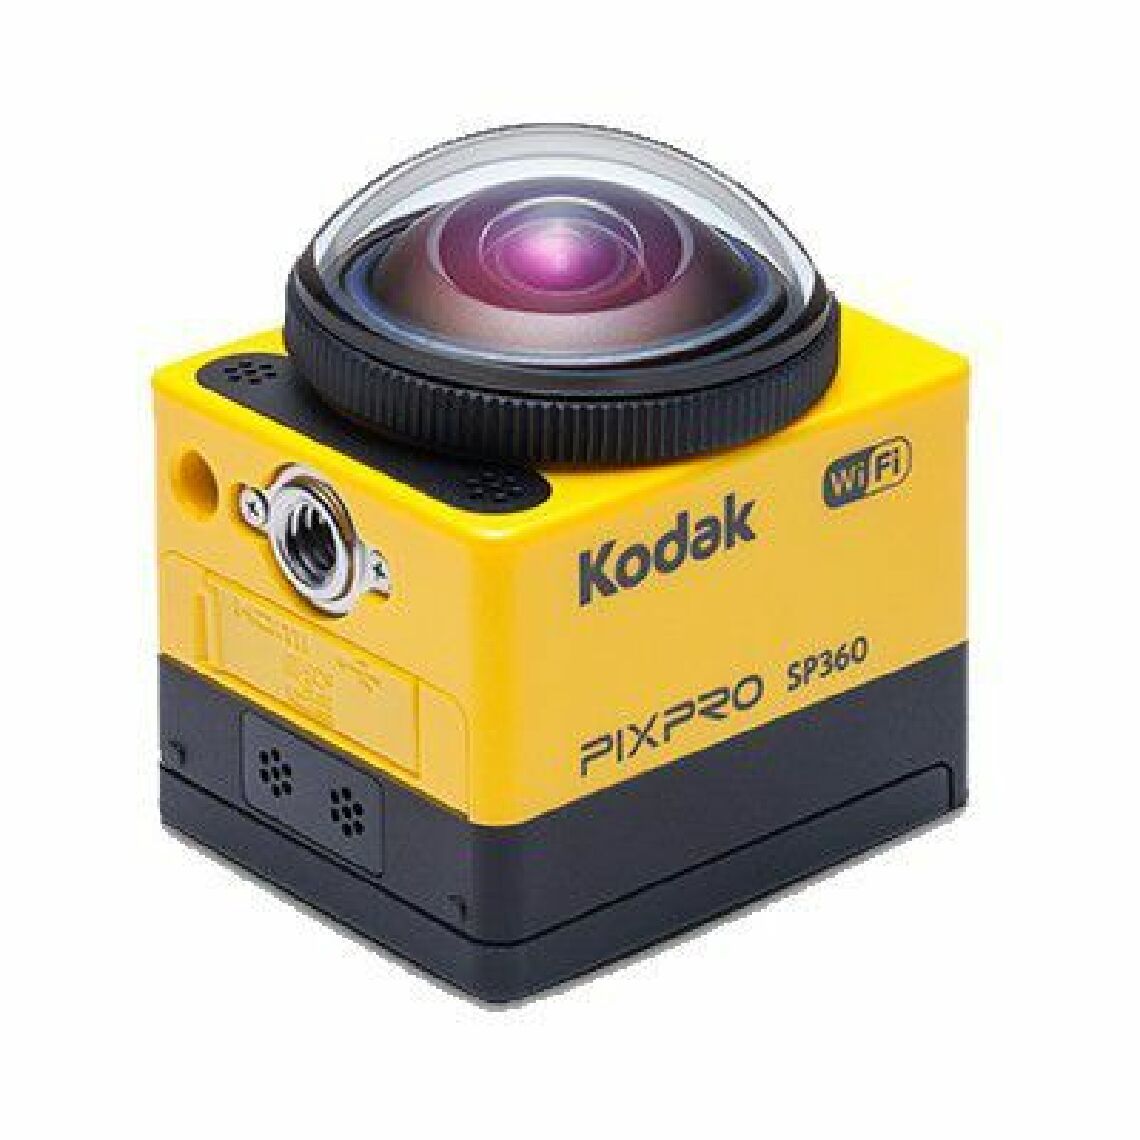 Kodak - KODAK Pixpro - Caméra Numérique - SP360 Combo C - Caméra 360° Pack Extrême - Accessoires caméra